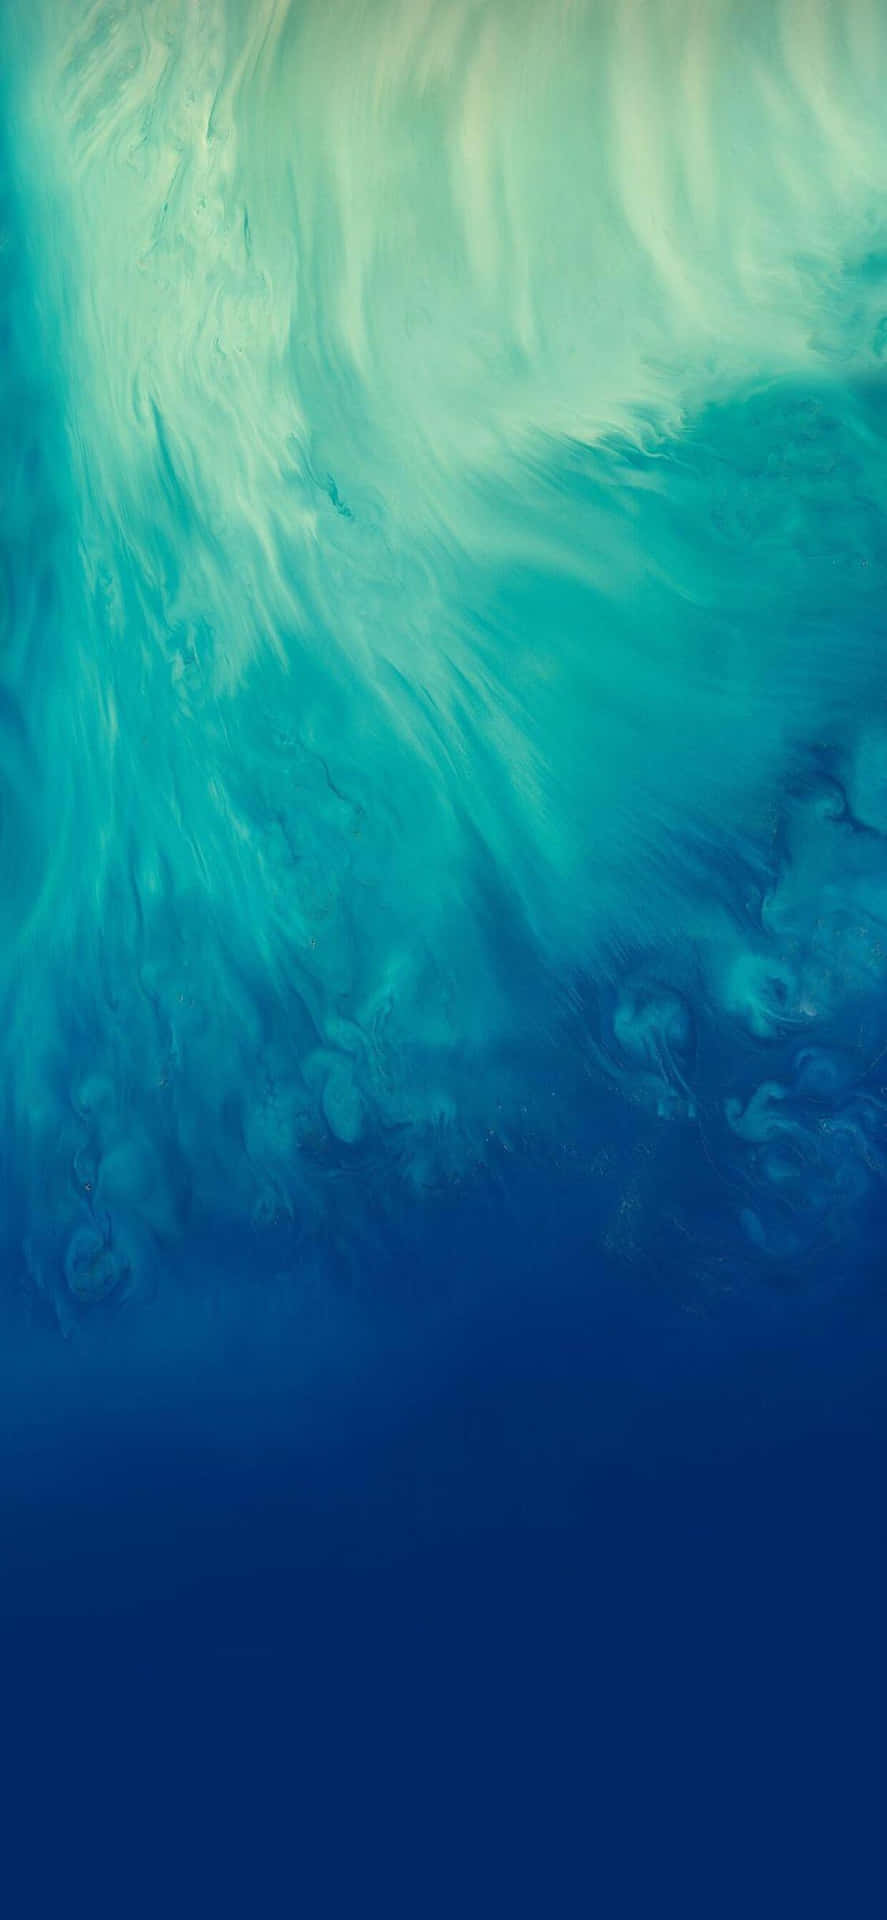 Abstract Aqua Waves Texture Wallpaper